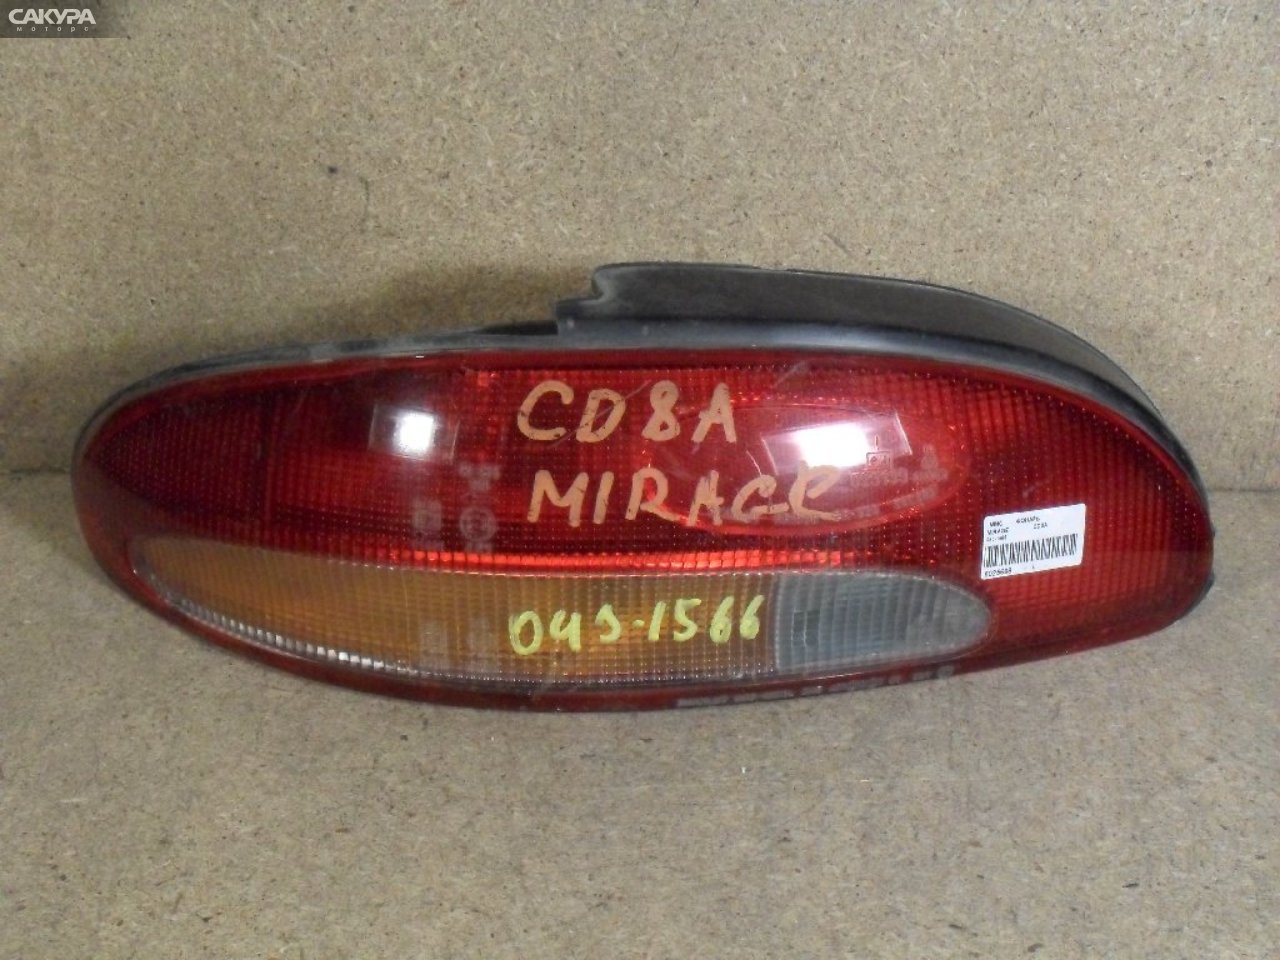 Фонарь стоп-сигнала левый Mitsubishi Mirage CD8A 043-1566: купить в Сакура Абакан.